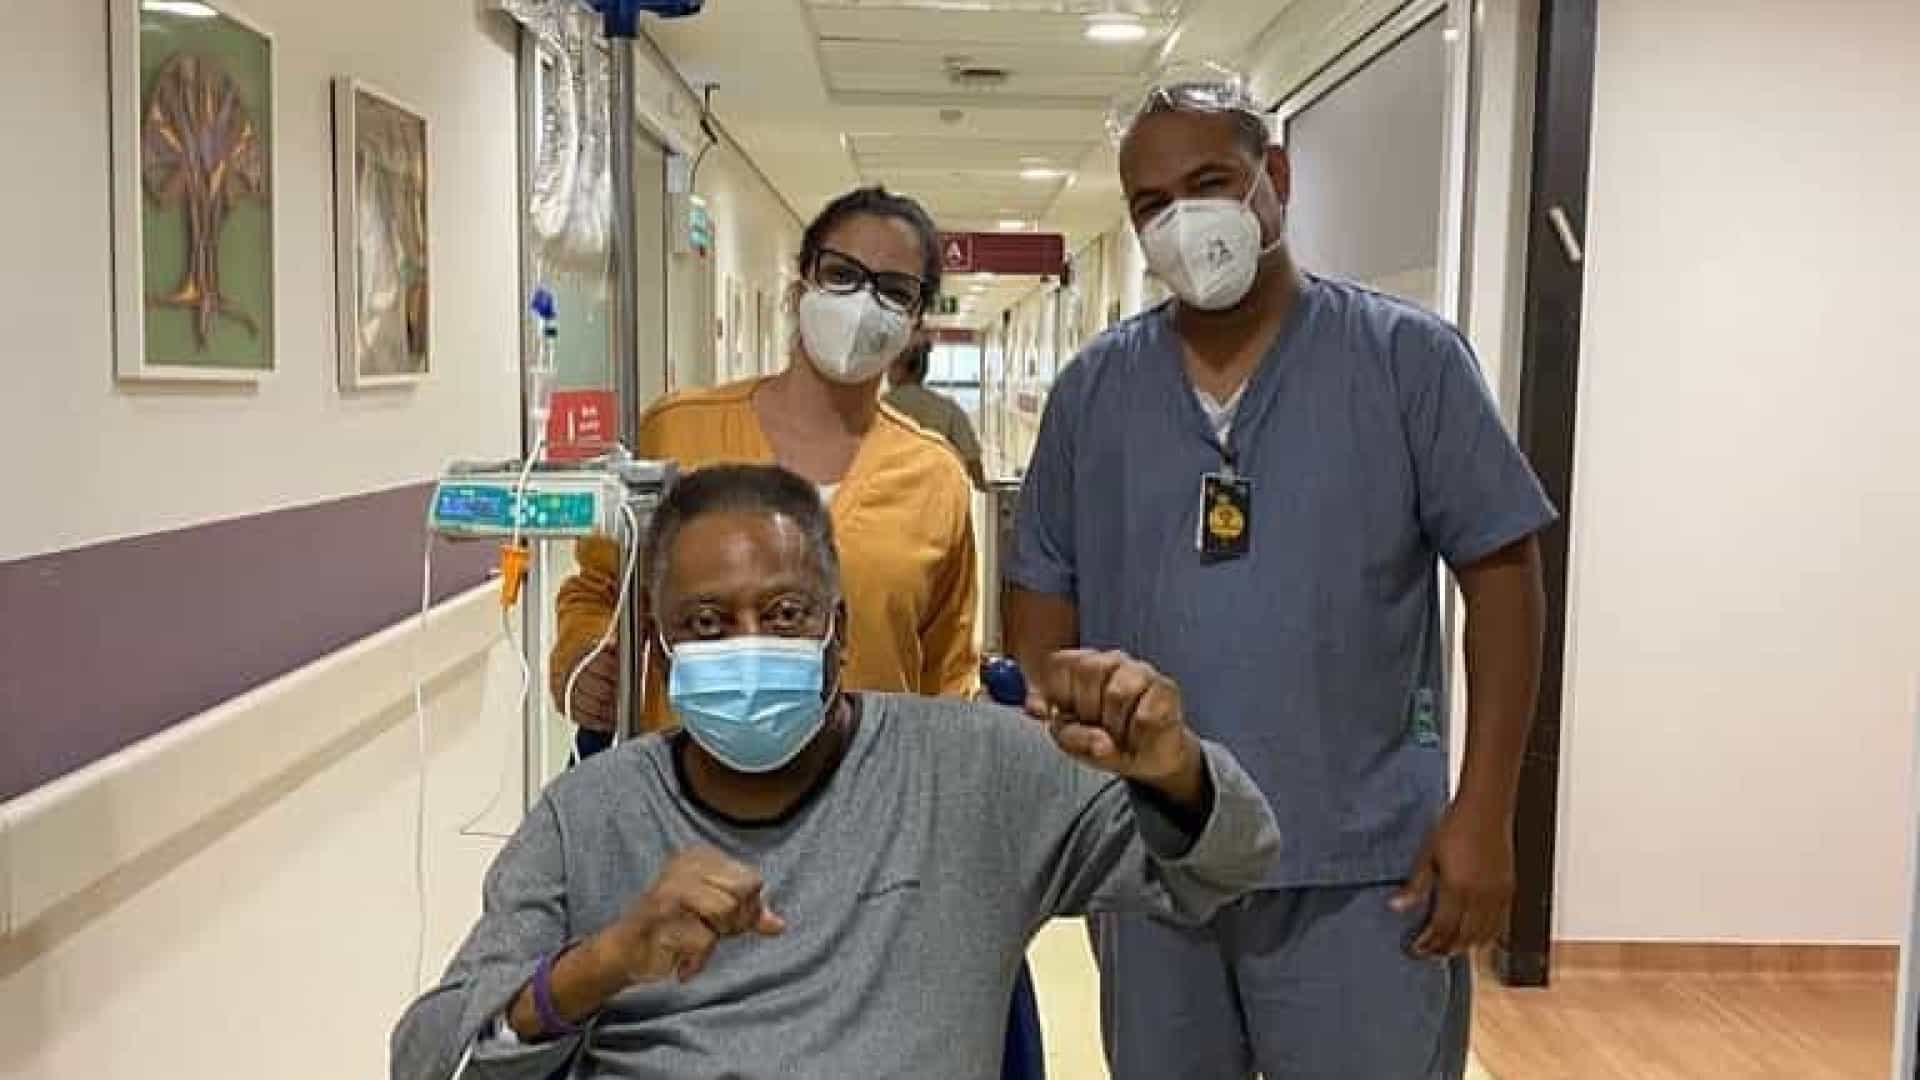 La salud de Pelé: su estado mejoró y esperan que pronto pueda abandonar el hospital